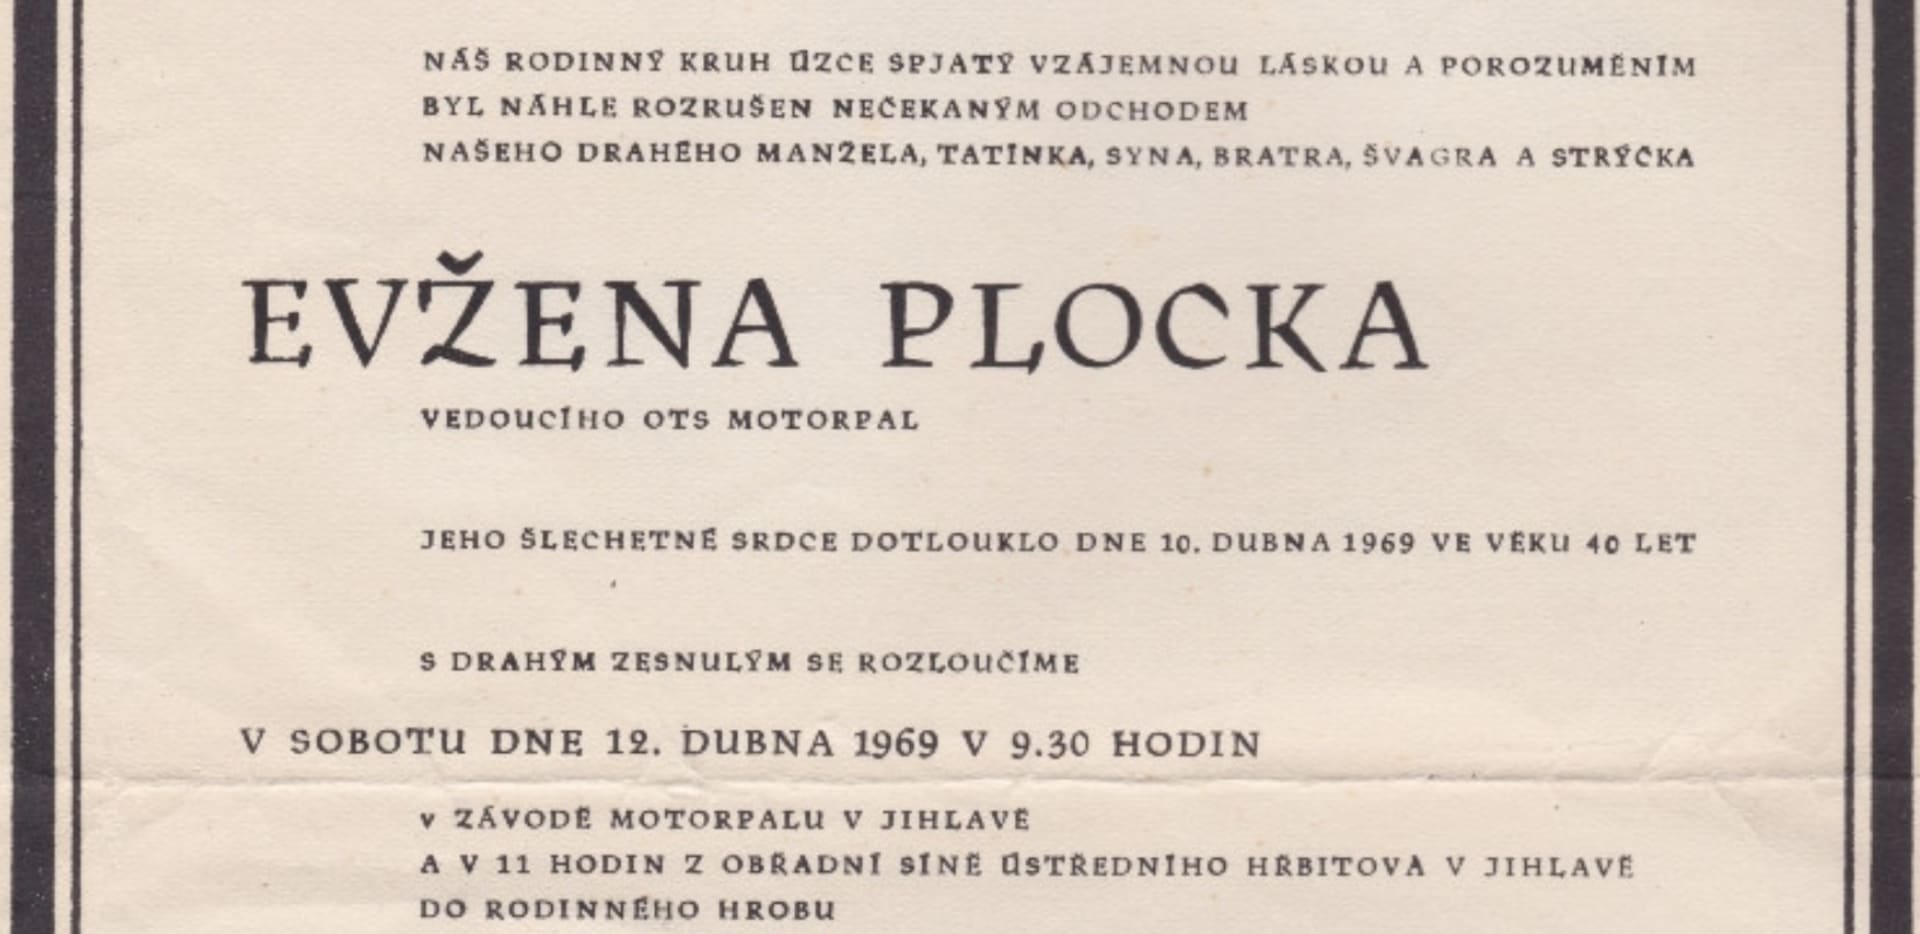 Na pohřeb Evžena Plocka přišlo 12. dubna 1969 asi 5 tisíc občanů. Průvod se táhl městem v délce tři kilometry a proměnil se v mohutný protest pro sovětské okupaci a nastupující normalizaci.